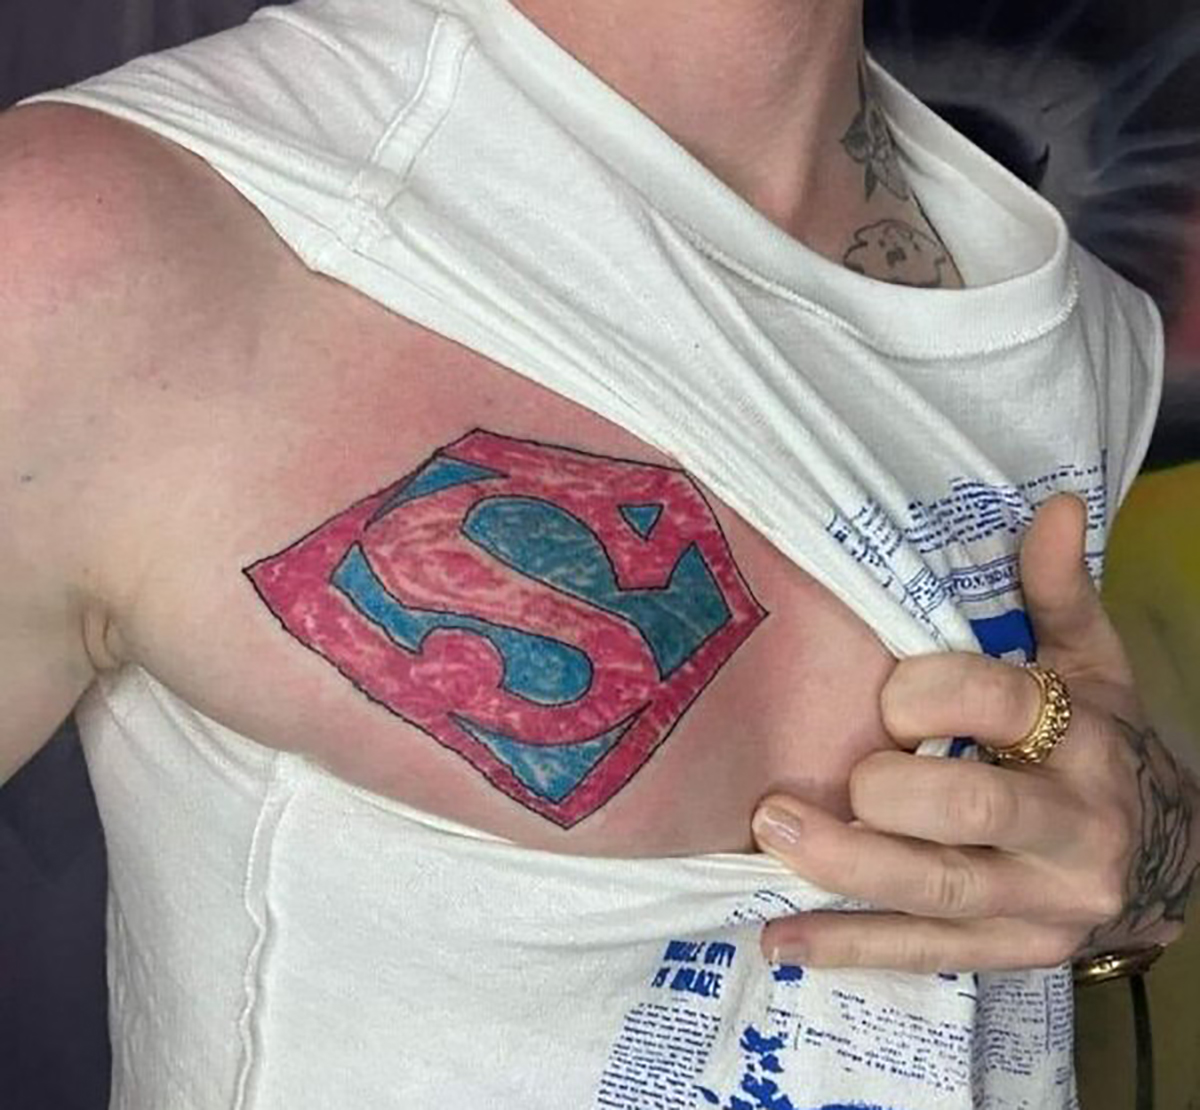 bad tattoos - shoulder - Mile Wity Blaze ros Bu